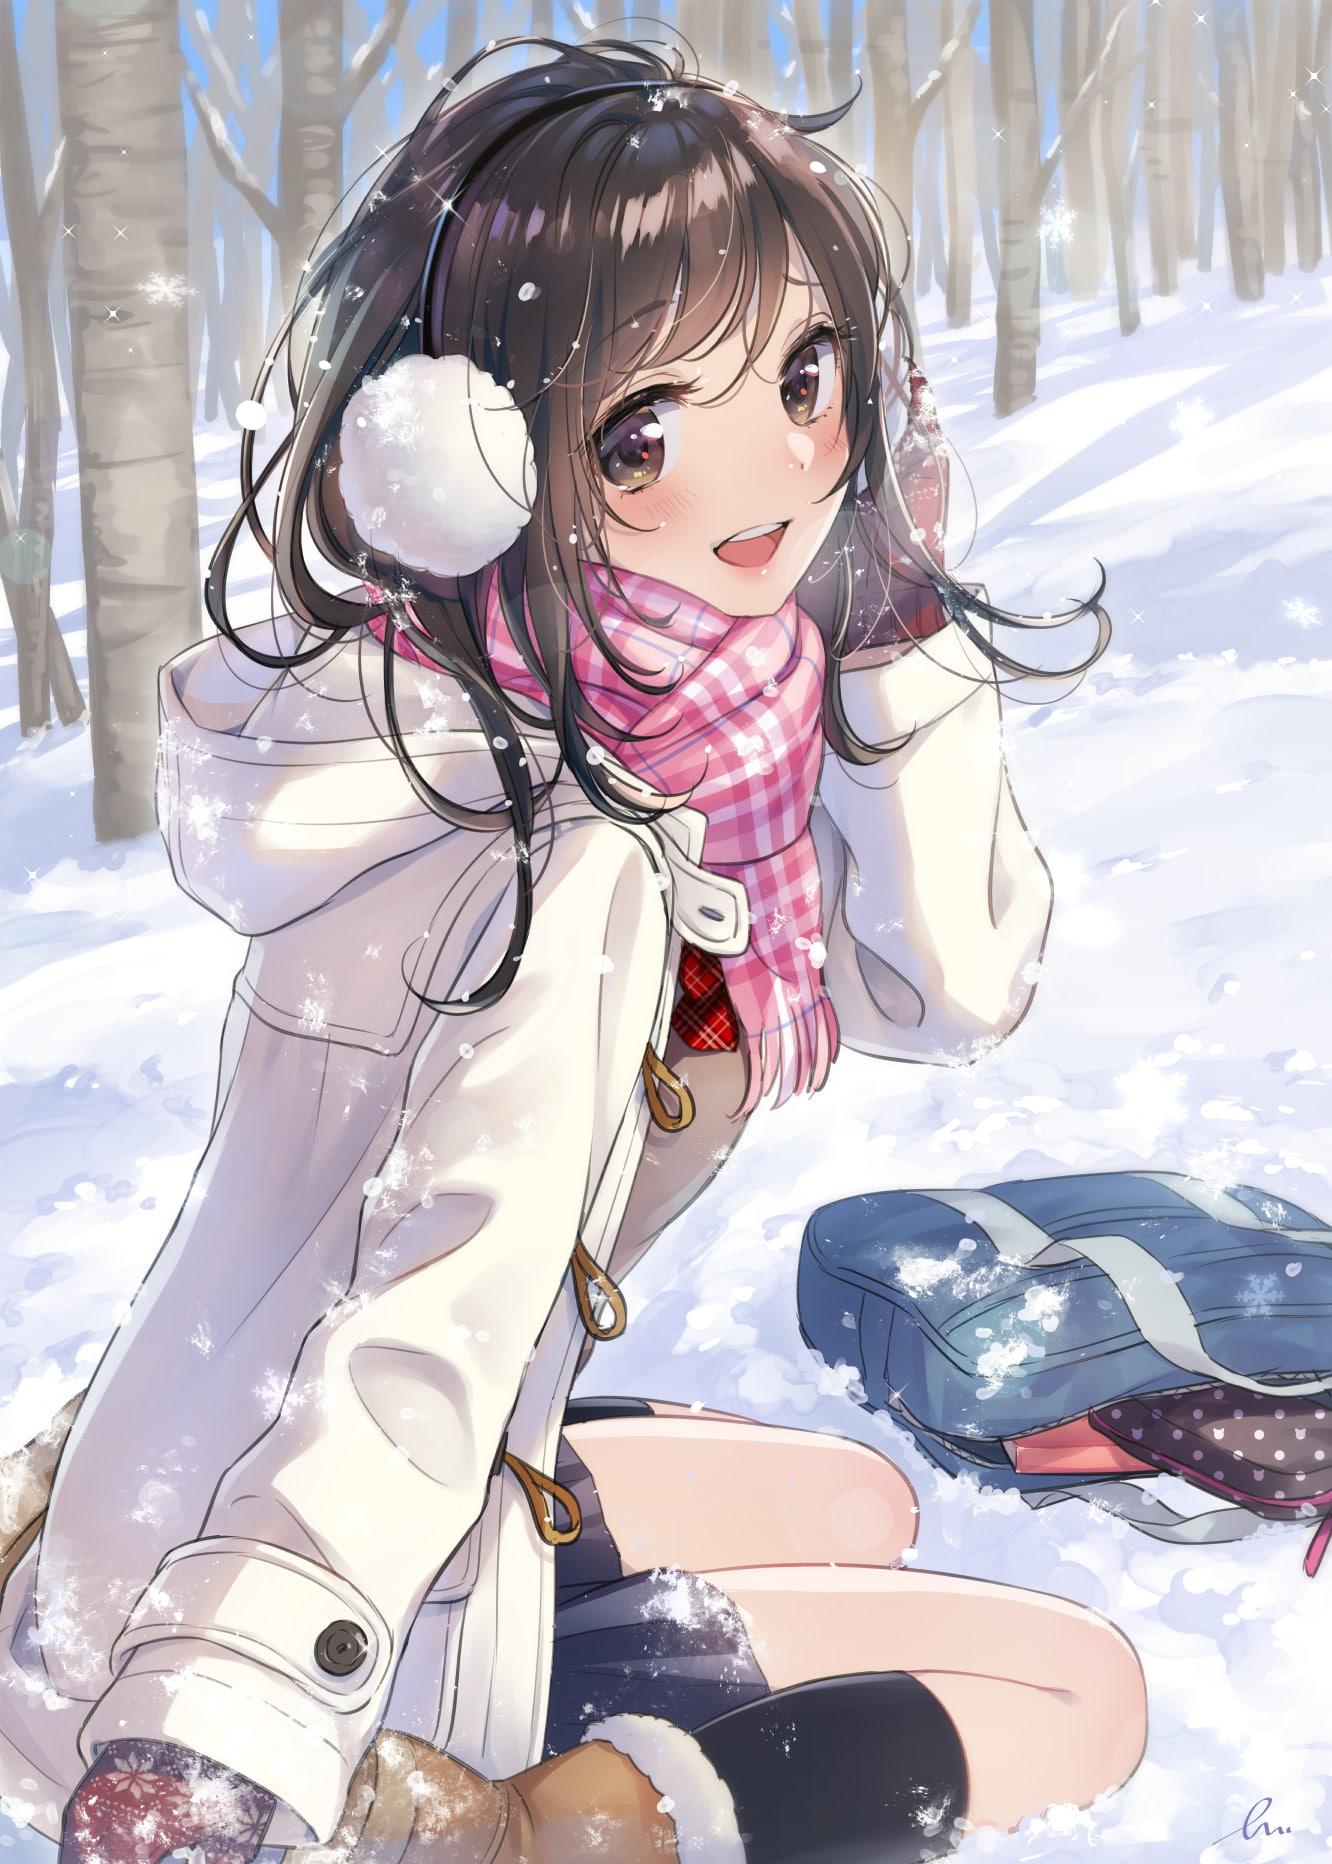 HD wallpaper: Anime, Original, Girl, Mountain, Snow, Sun